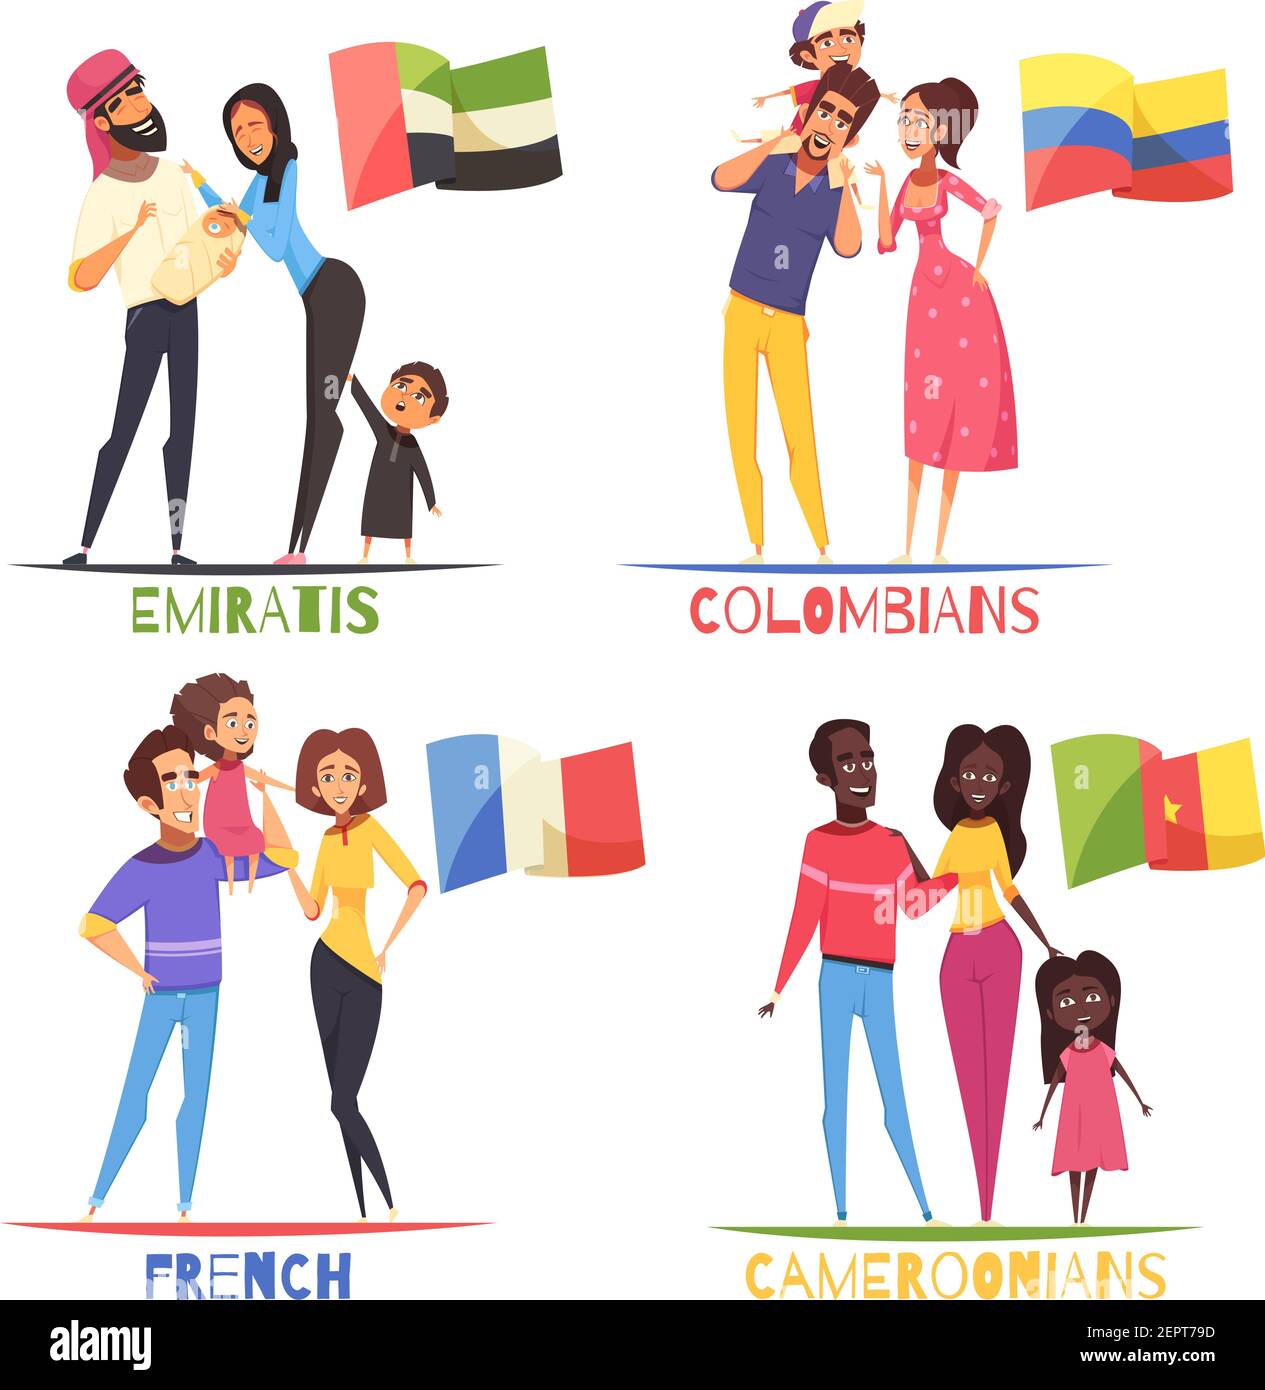 Familien mit Kindern verschiedener Nationalitäten französisch, kolumbianer, kameruner, araber aus den emiraten, Design-Konzept isoliert Vektor Illustration Stock Vektor